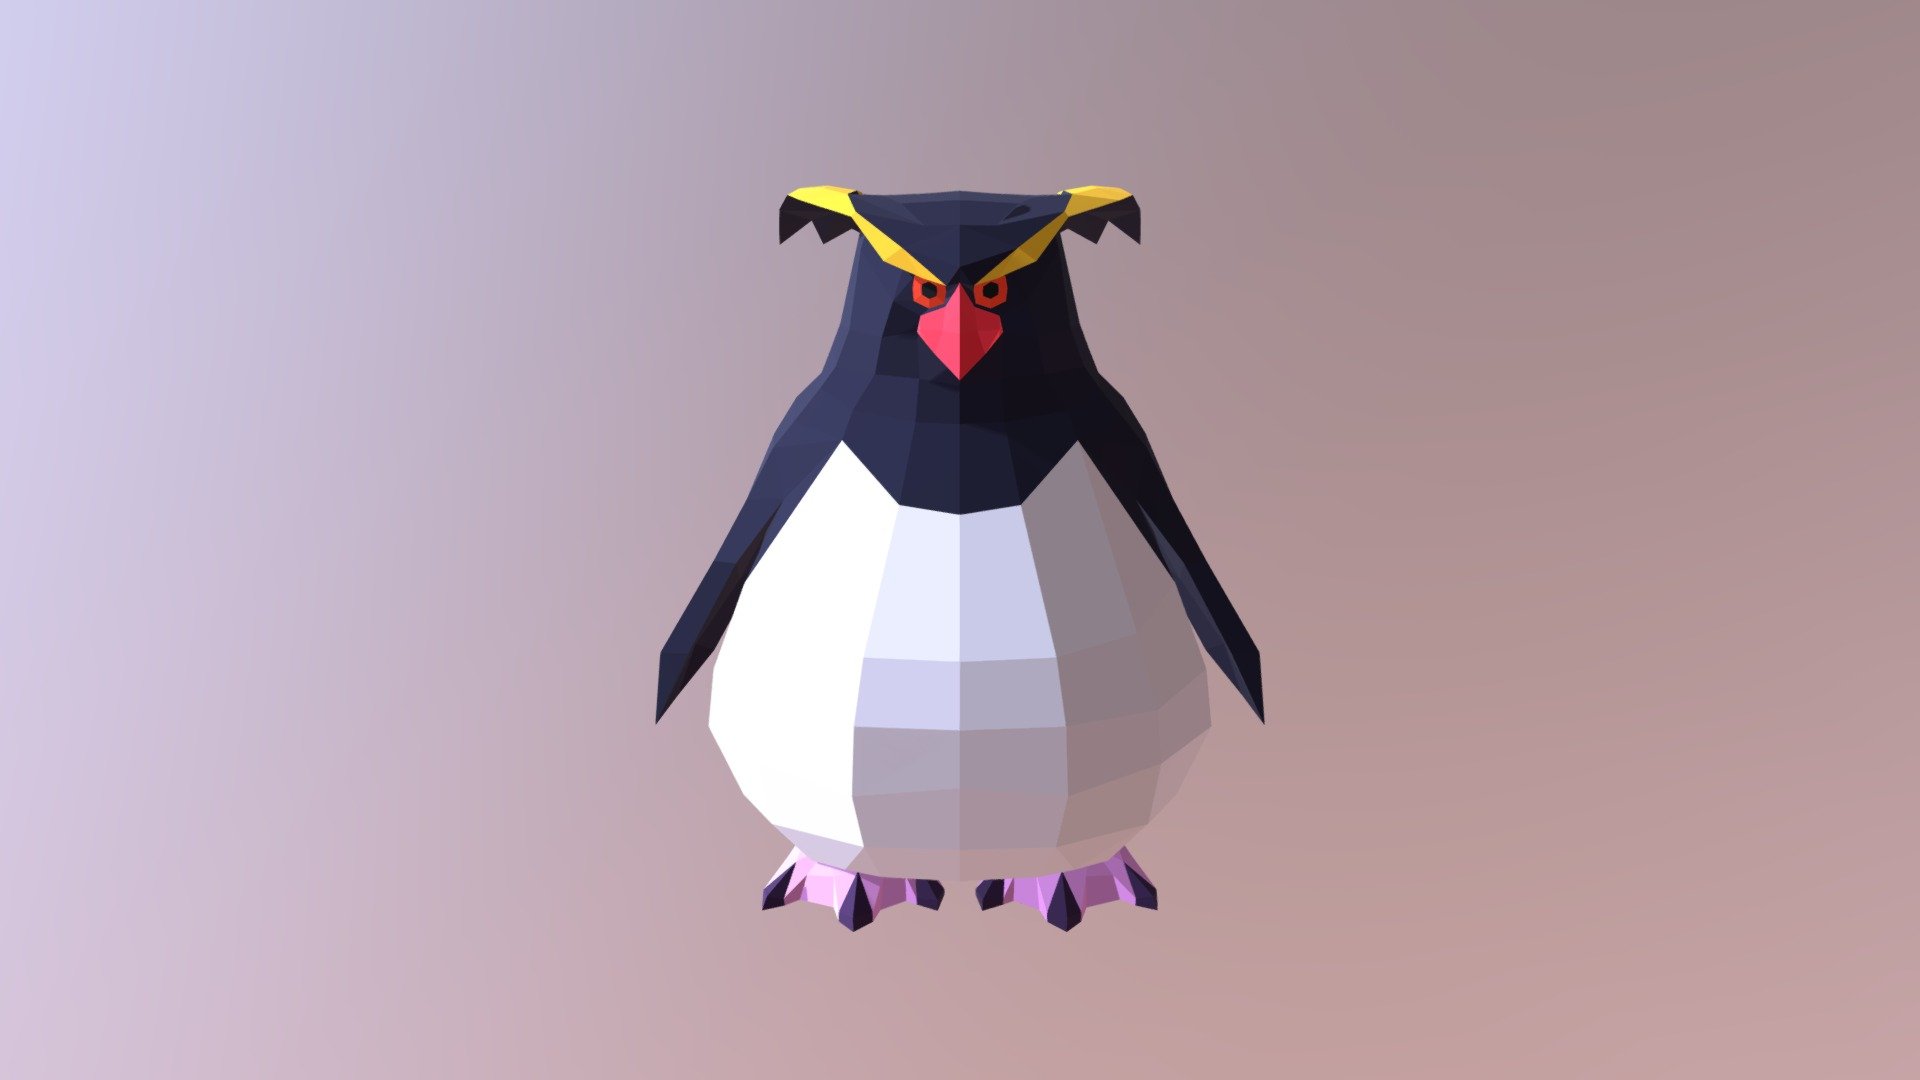 Lowpoly rock penguin model - Rock P - 3D model by KaO (@KuAoki) 3d model